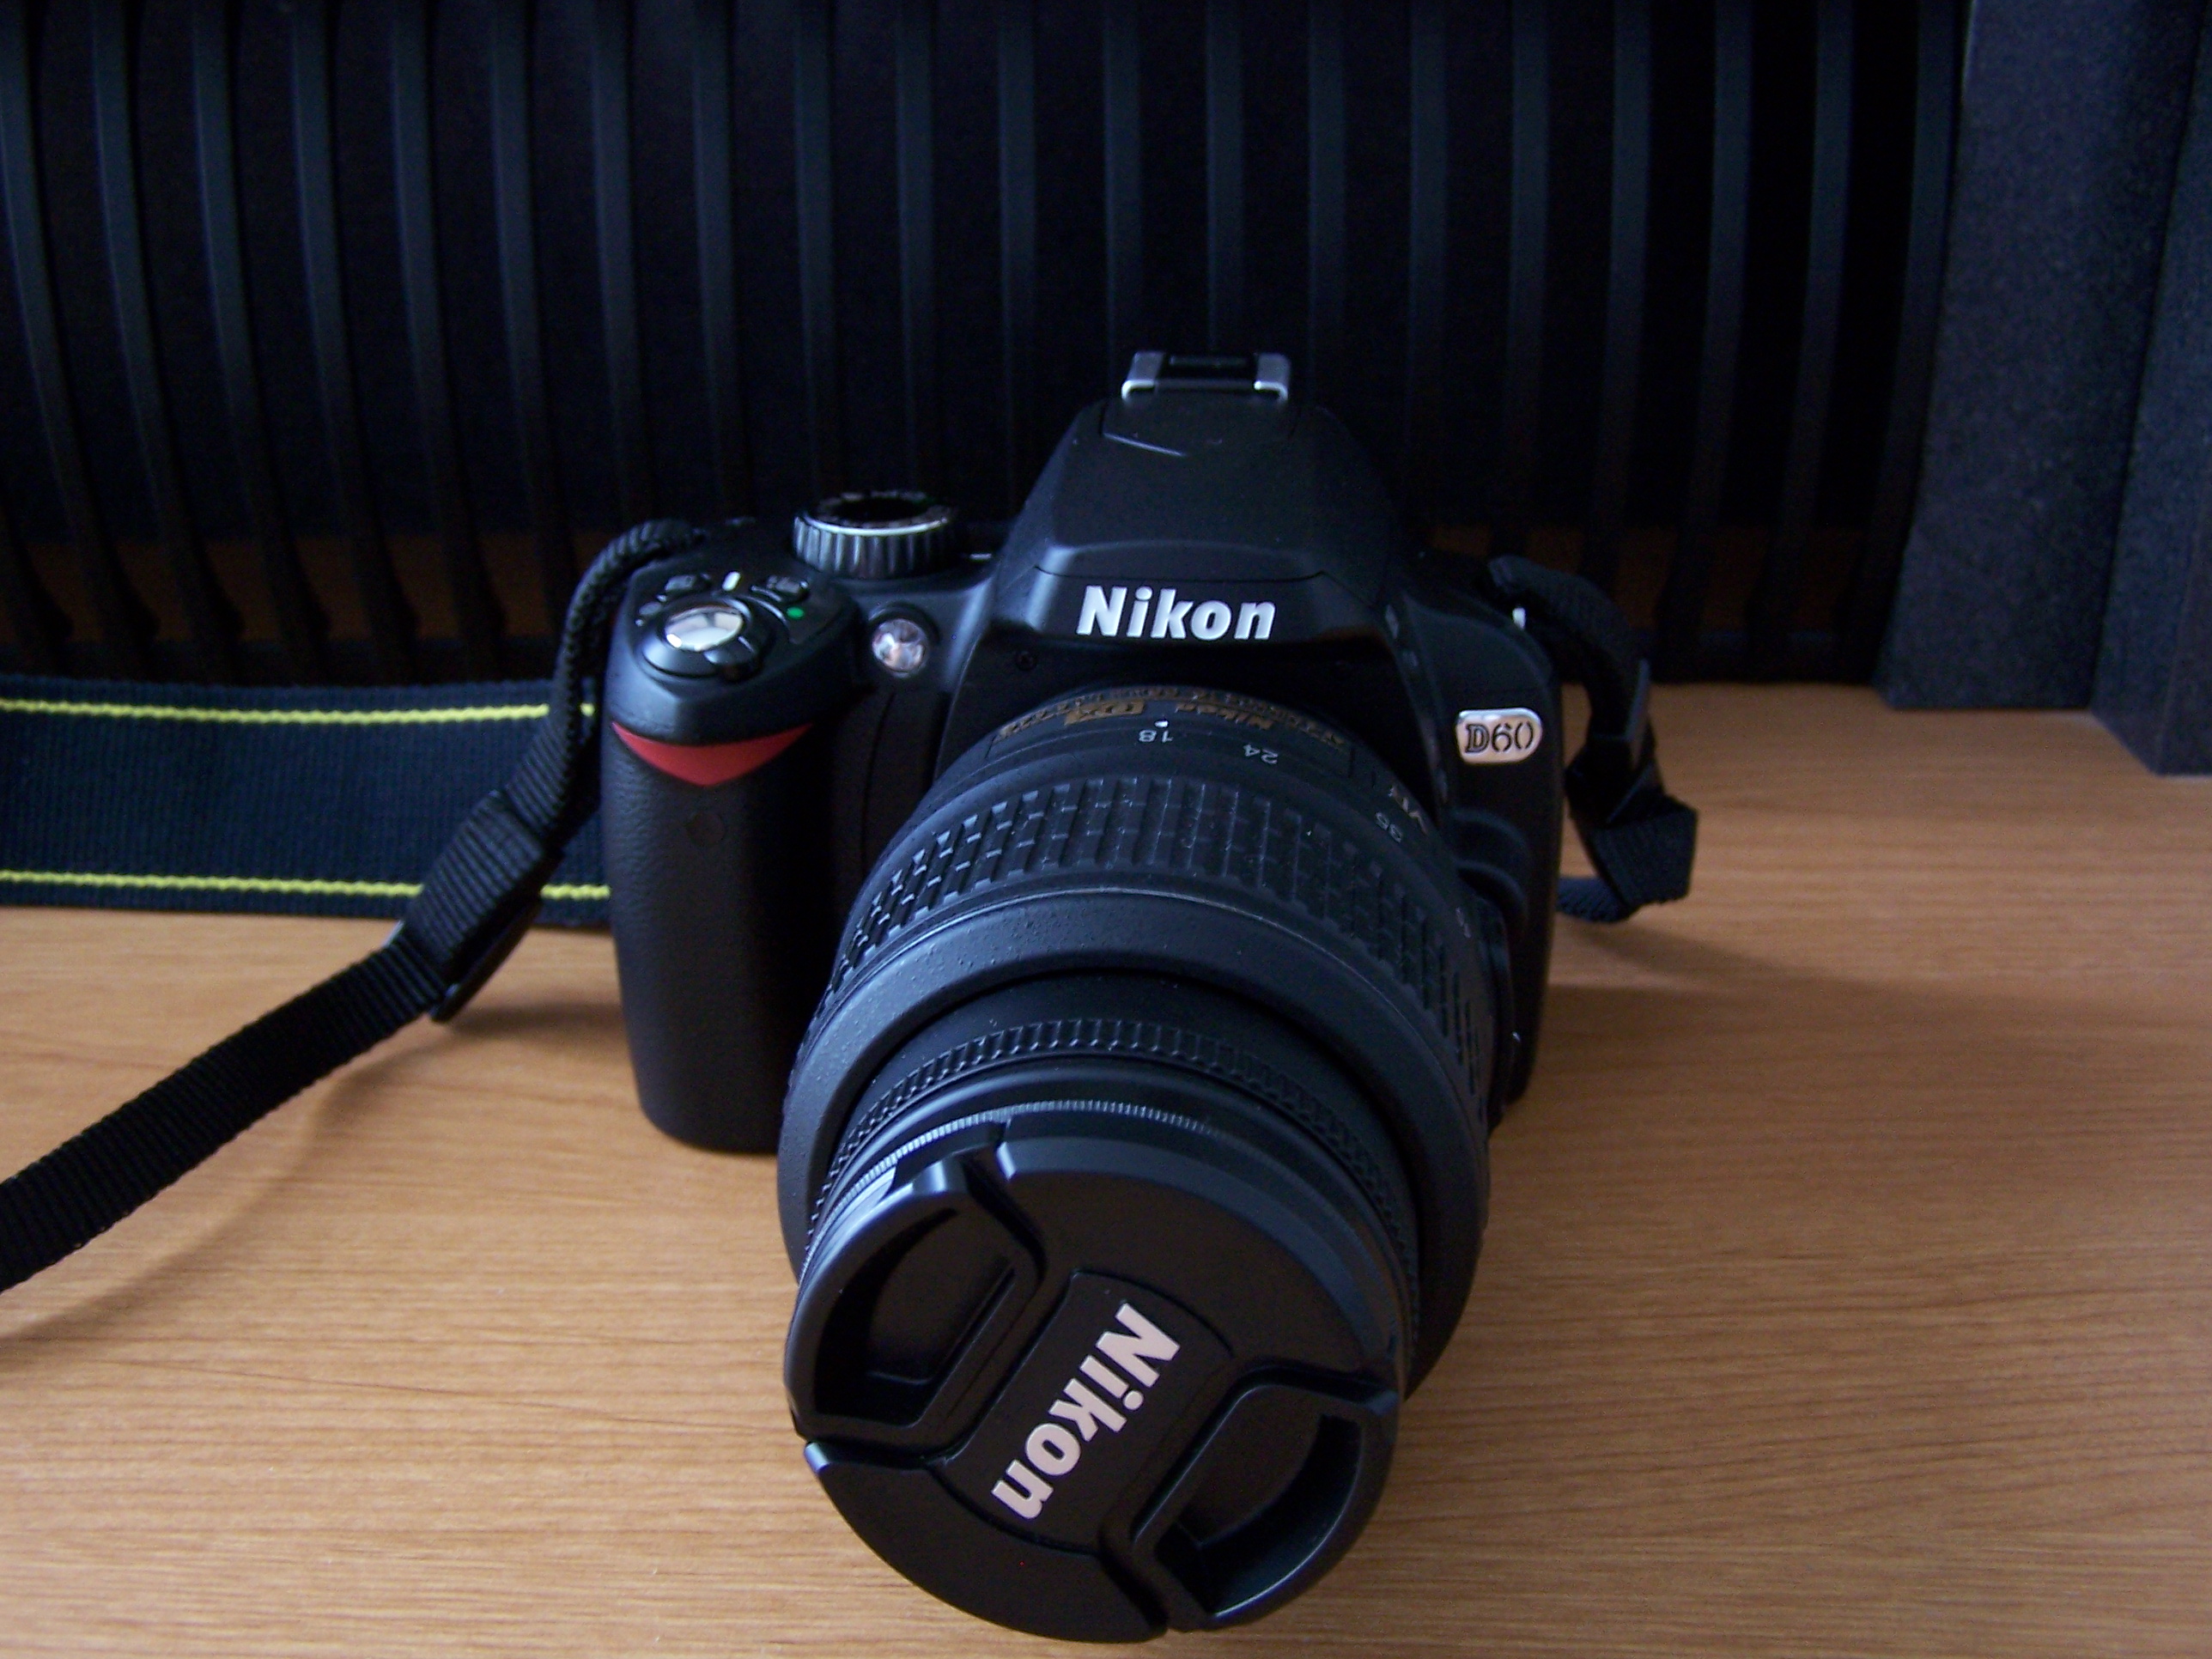 Nikon D60 có thiết kế gọn gàng và tiện dụng nhất cho người dùng